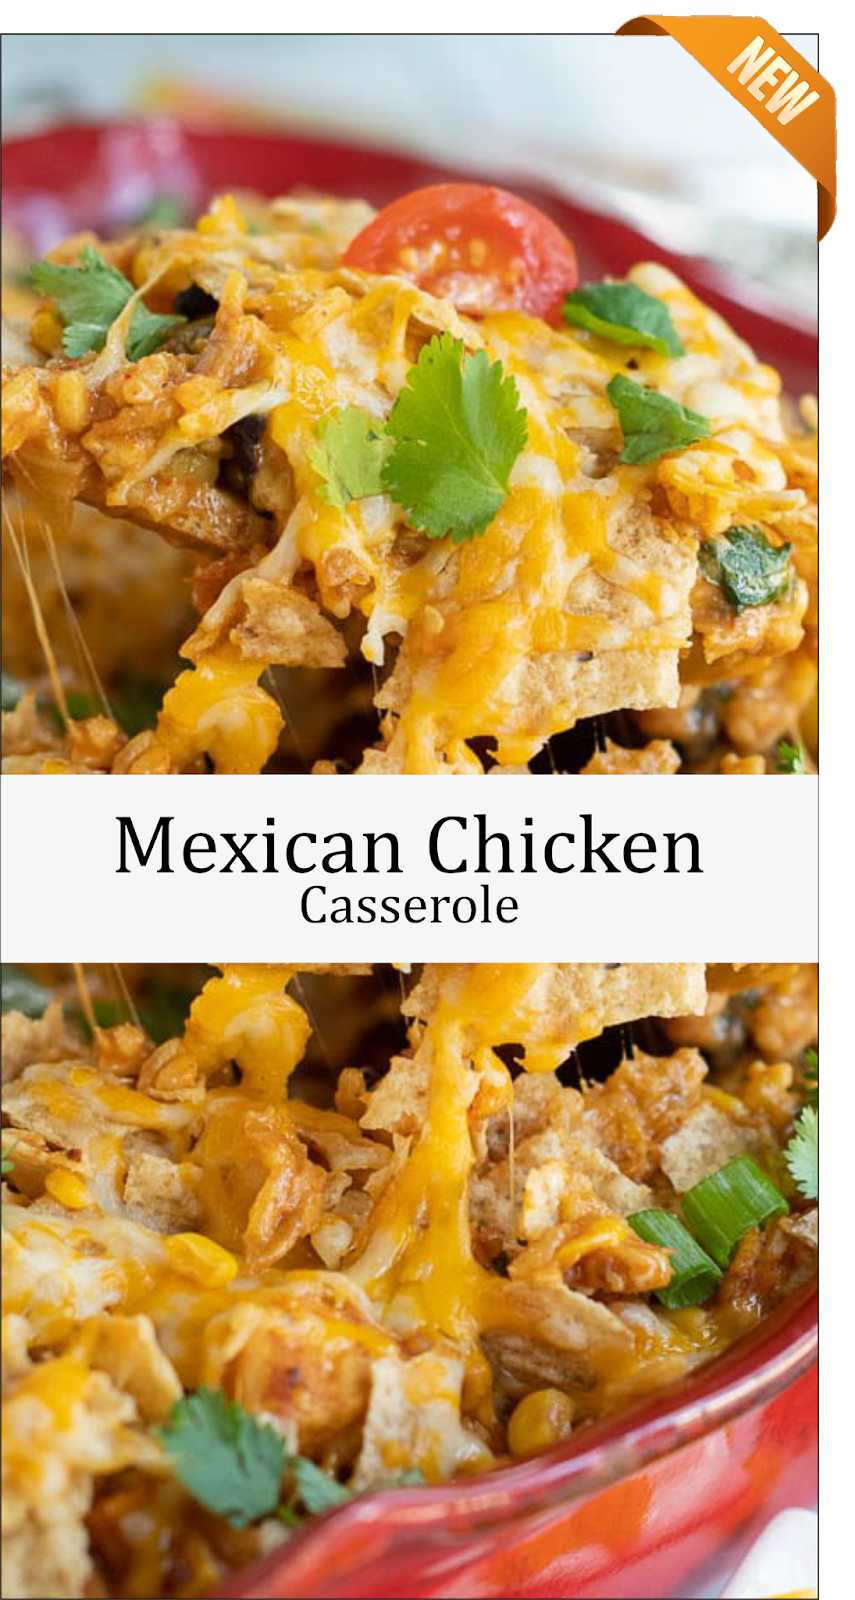 Mexican Chicken Casserole | Latte Intero